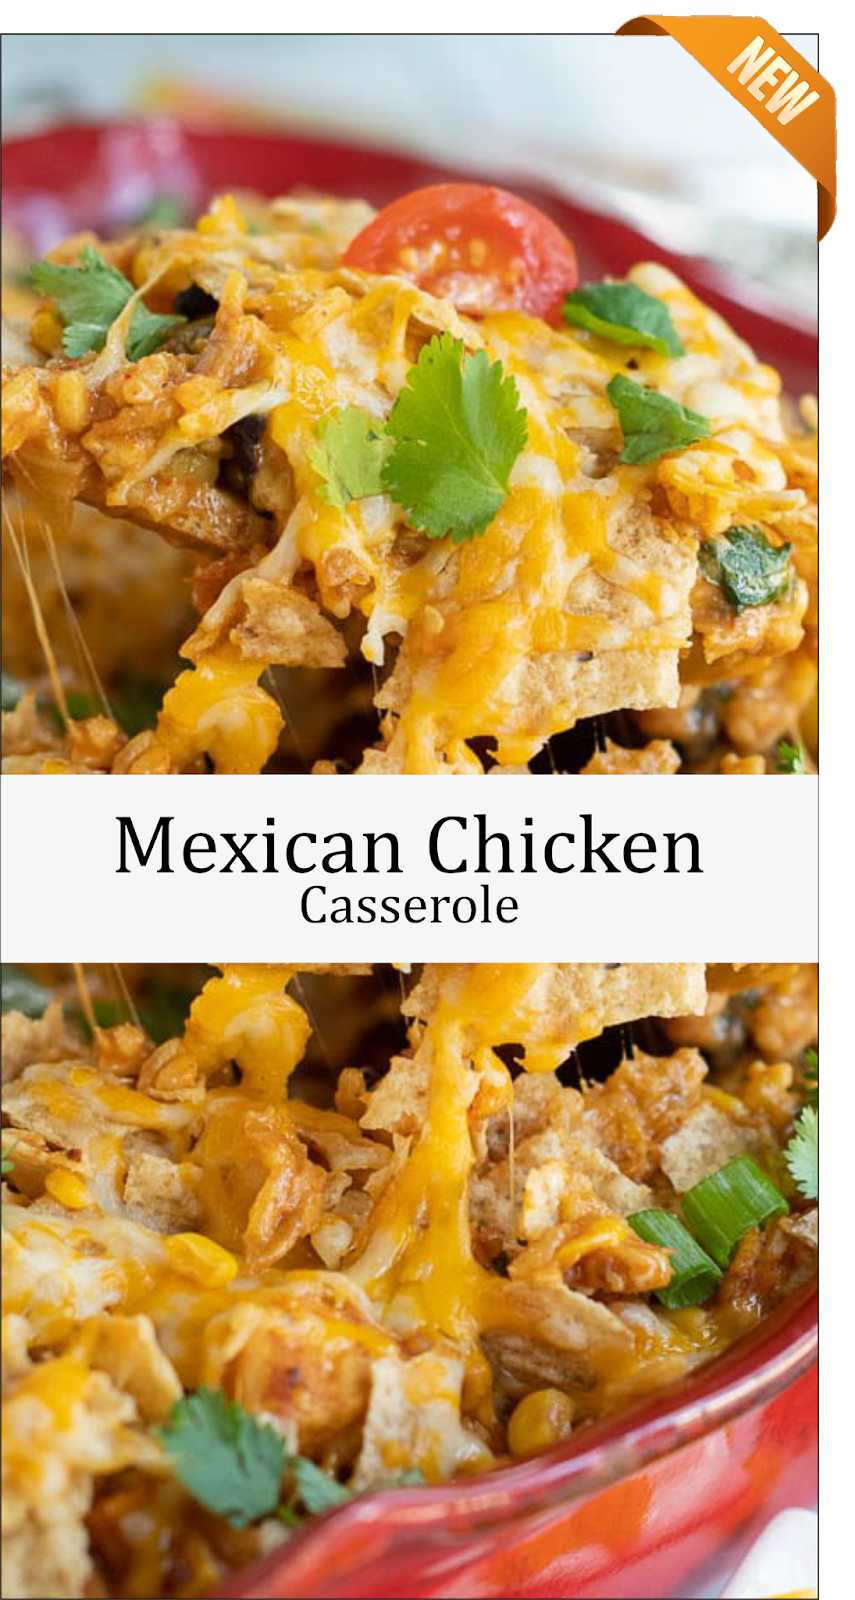 Mexican Chicken Casserole | Latte Intero